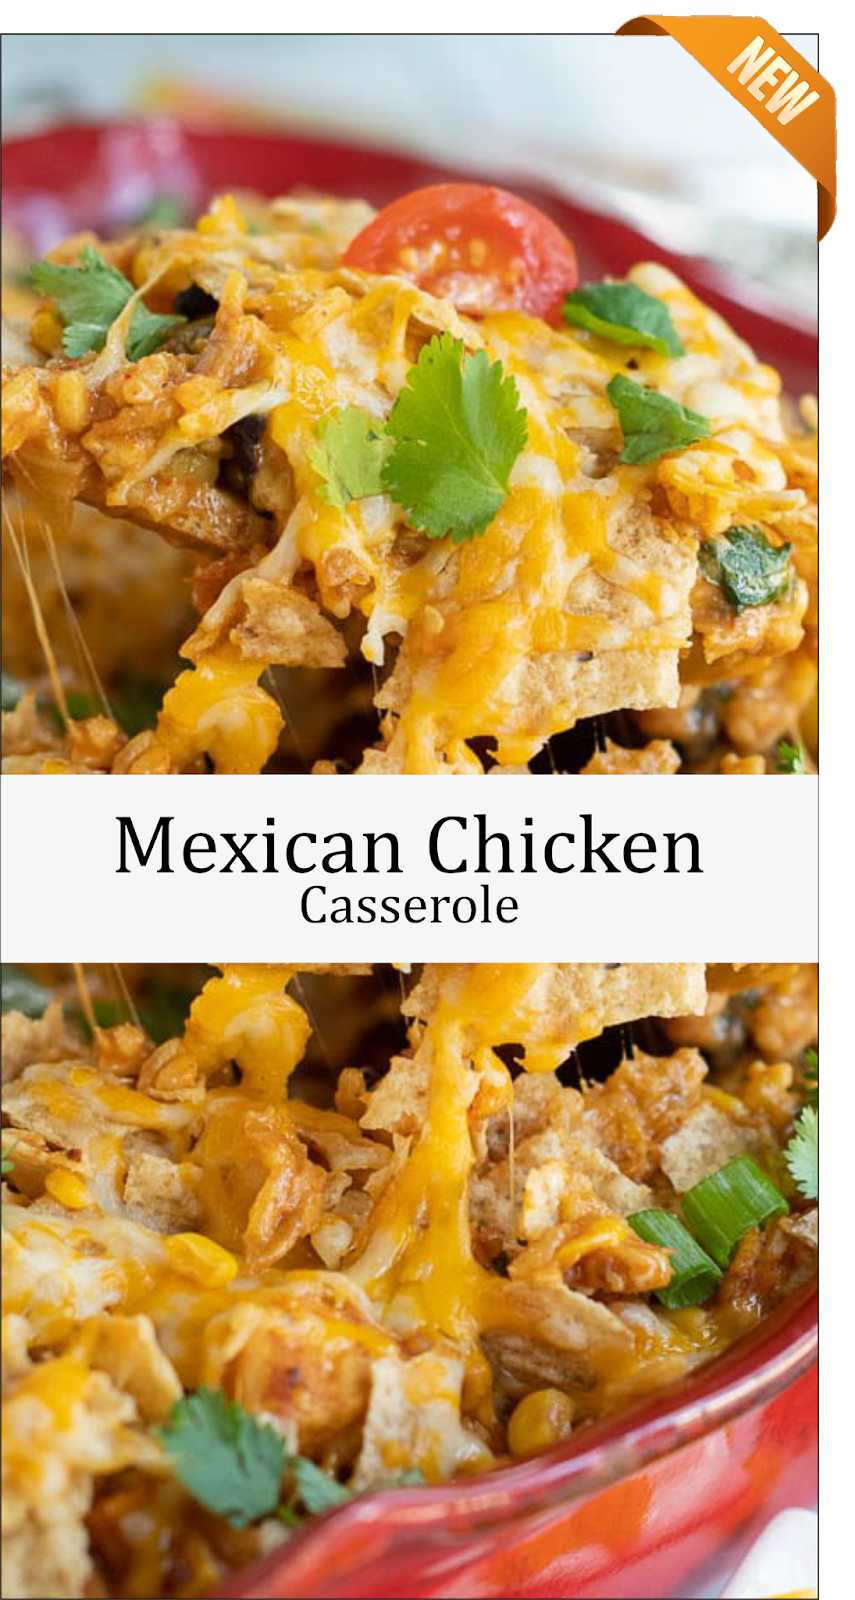 Mexican Chicken Casserole | Latte Intero